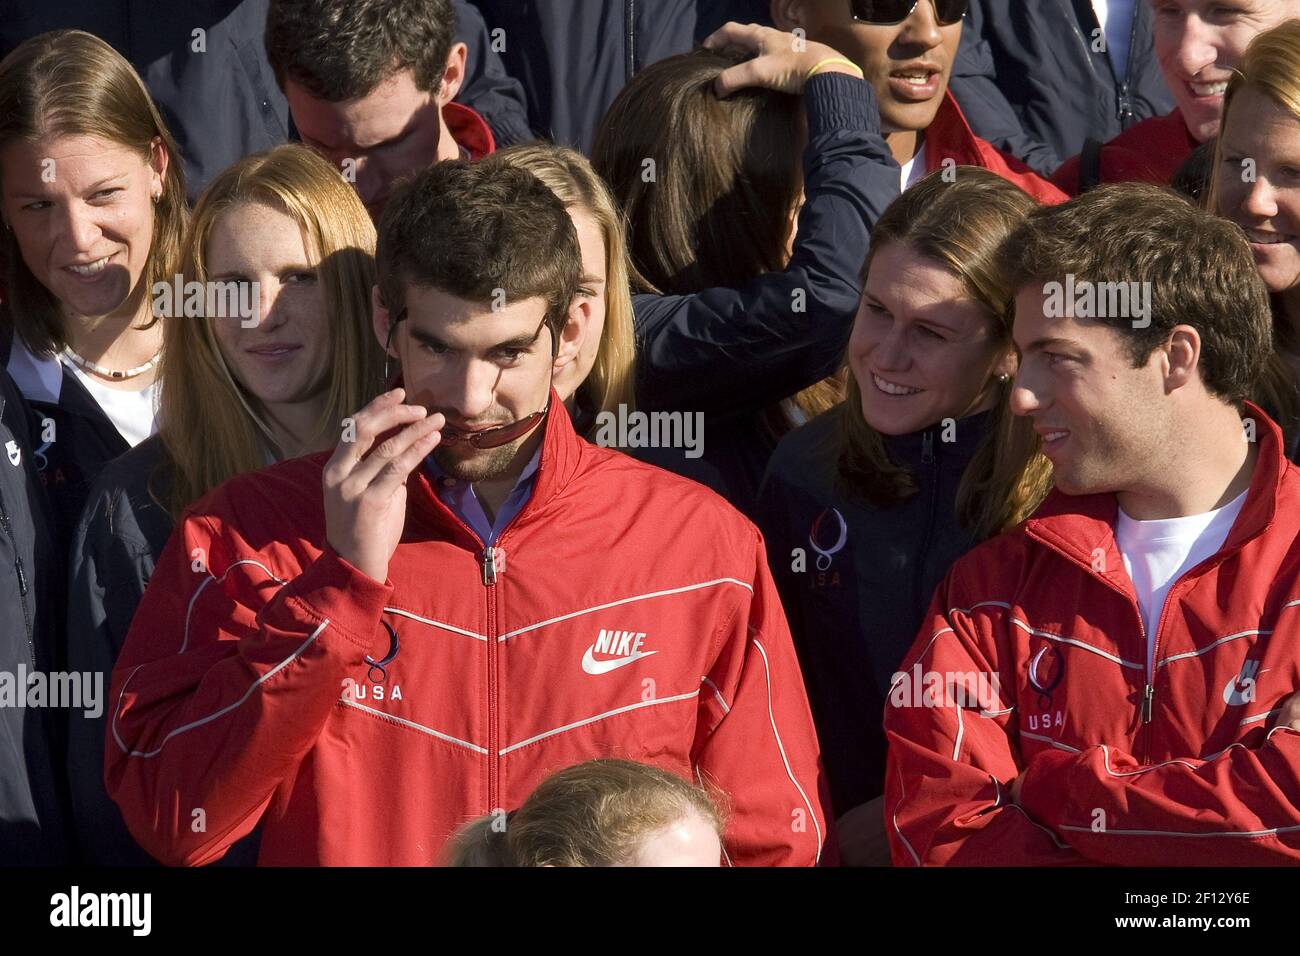 Schwimmer Michael Phelps und andere Mitglieder der 2008 Olympischen und Paralympischen Sommermannschaften der Vereinigten Staaten werden vom Präsidenten George W. Bush in Washington, D.C. am 7. Oktober 2008 im Weißen Haus begrüßt. (Chuck Kennedy/MCT/Sipa USA) Stockfoto